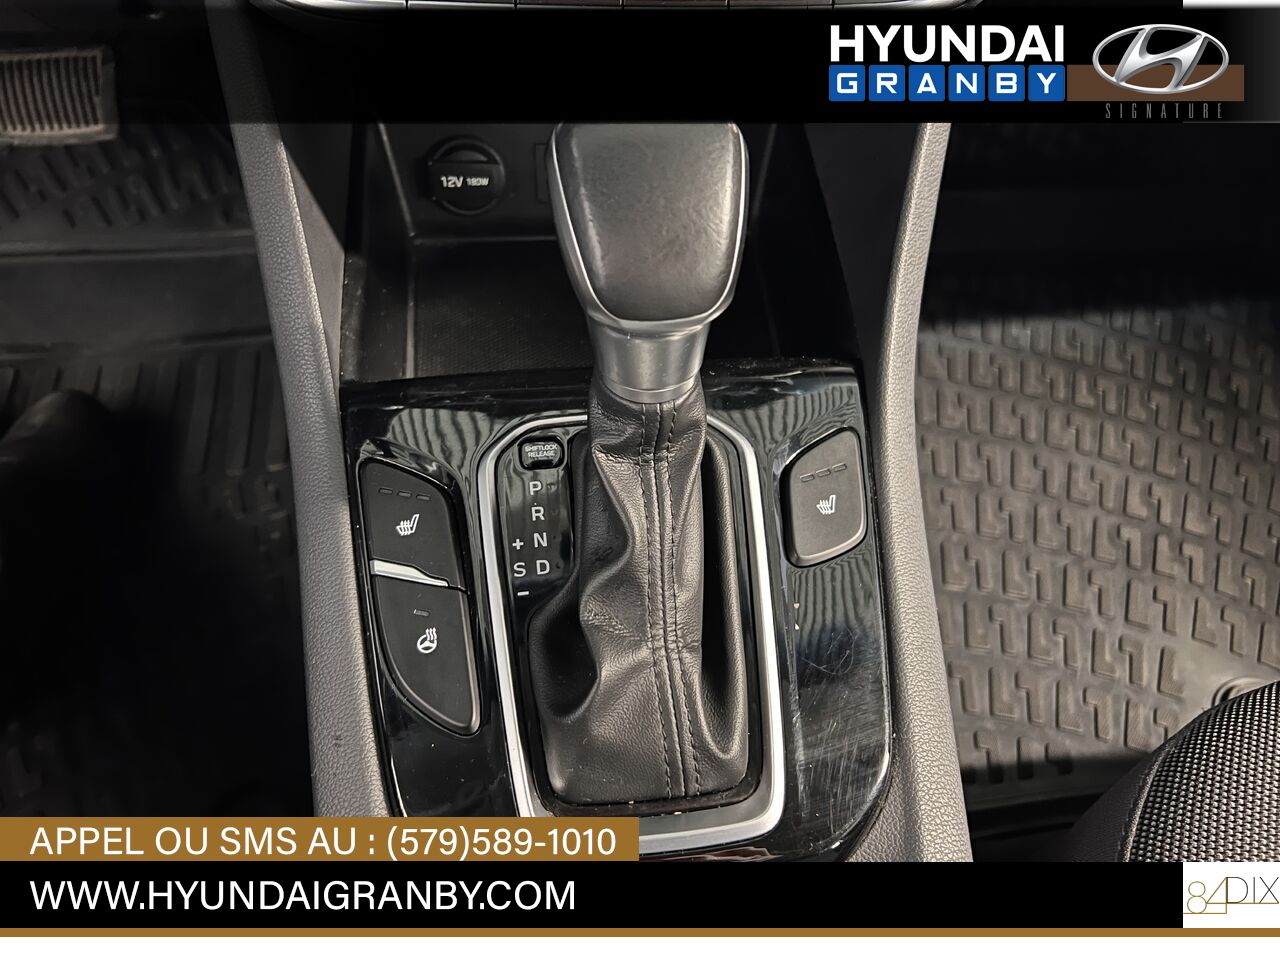 Hyundai Ioniq hybride 2017 Granby - photo #17